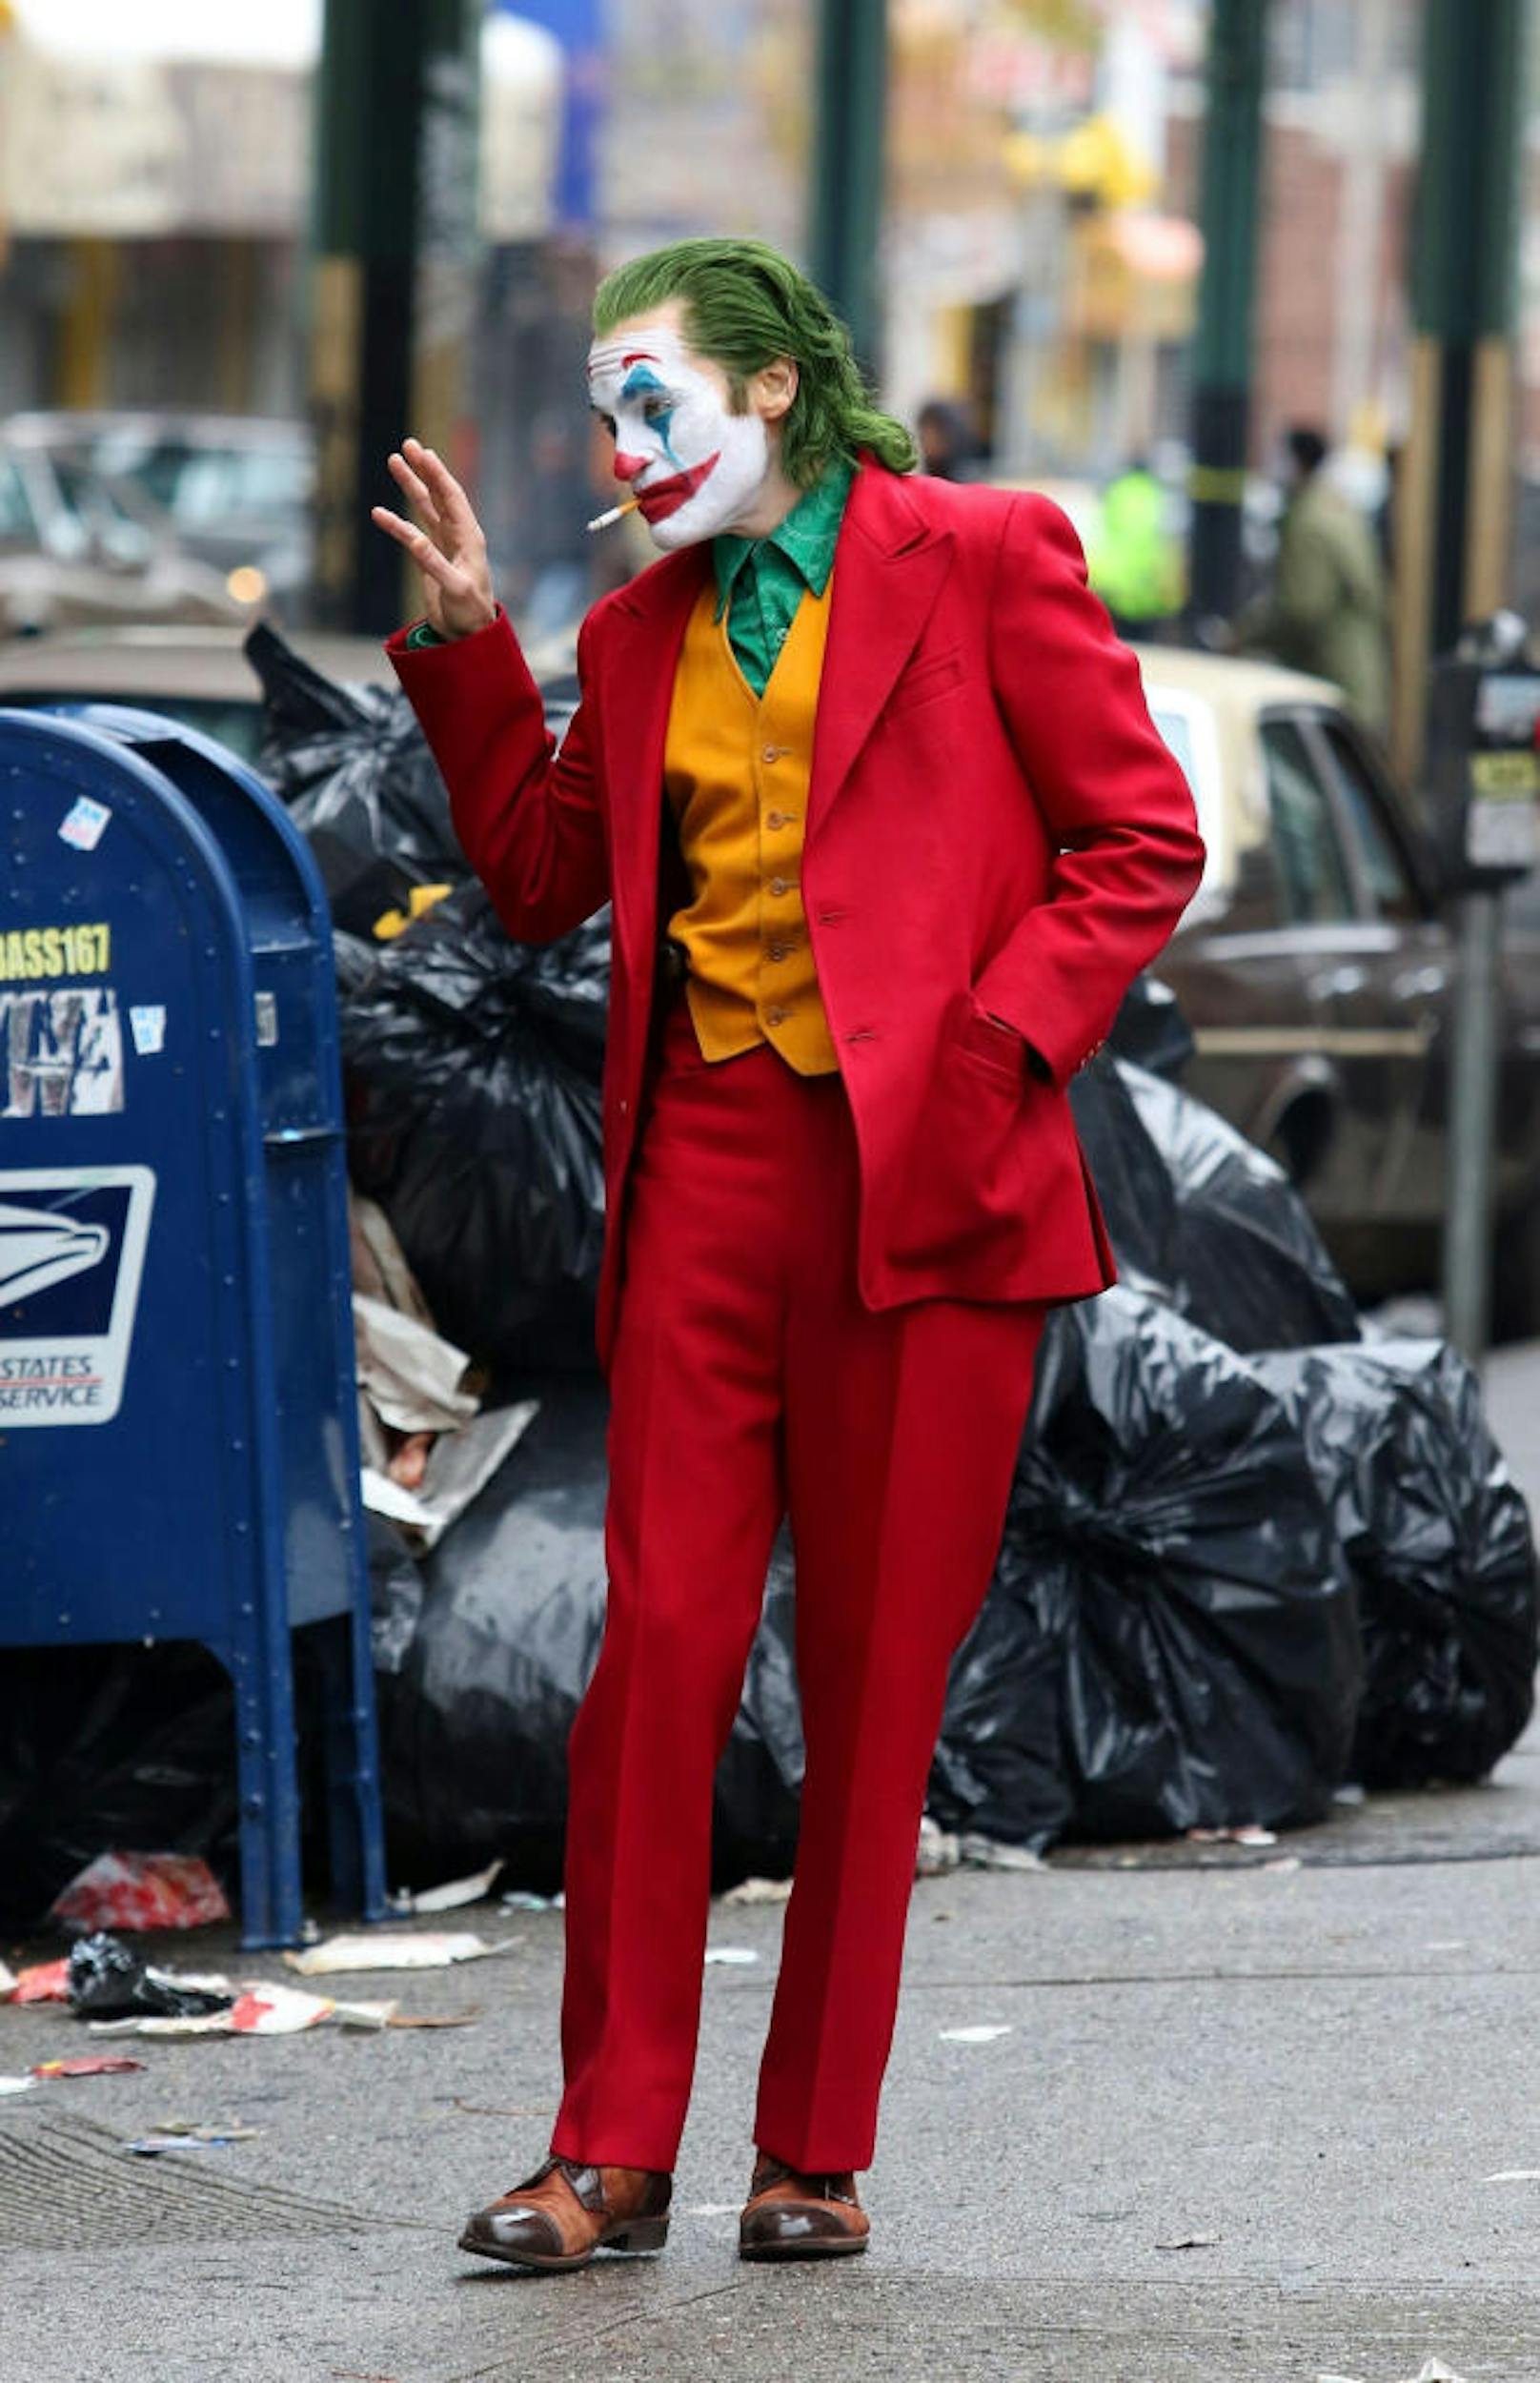 Der Joker soll 2019 ins Kino kommen. 